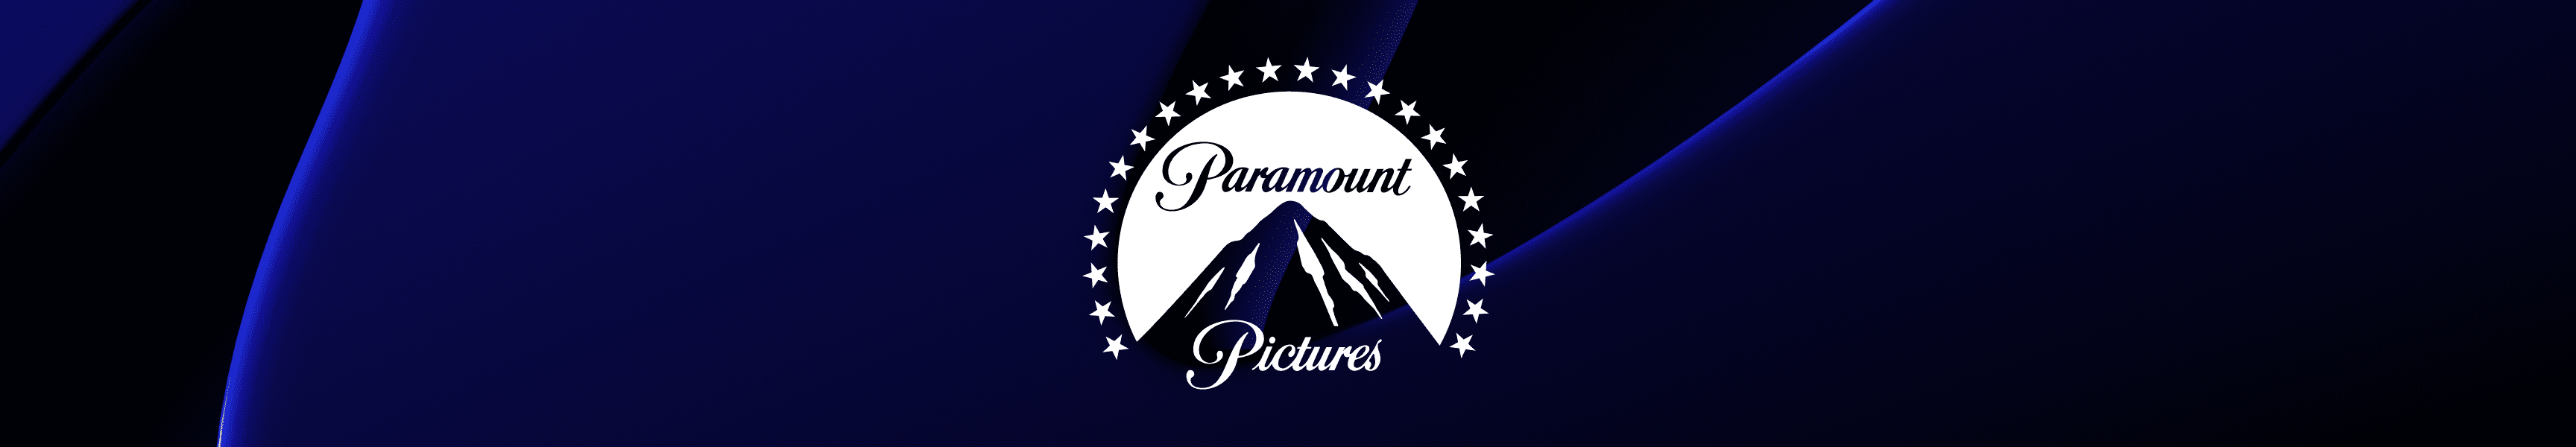 Paramount Pictures Notizbücher